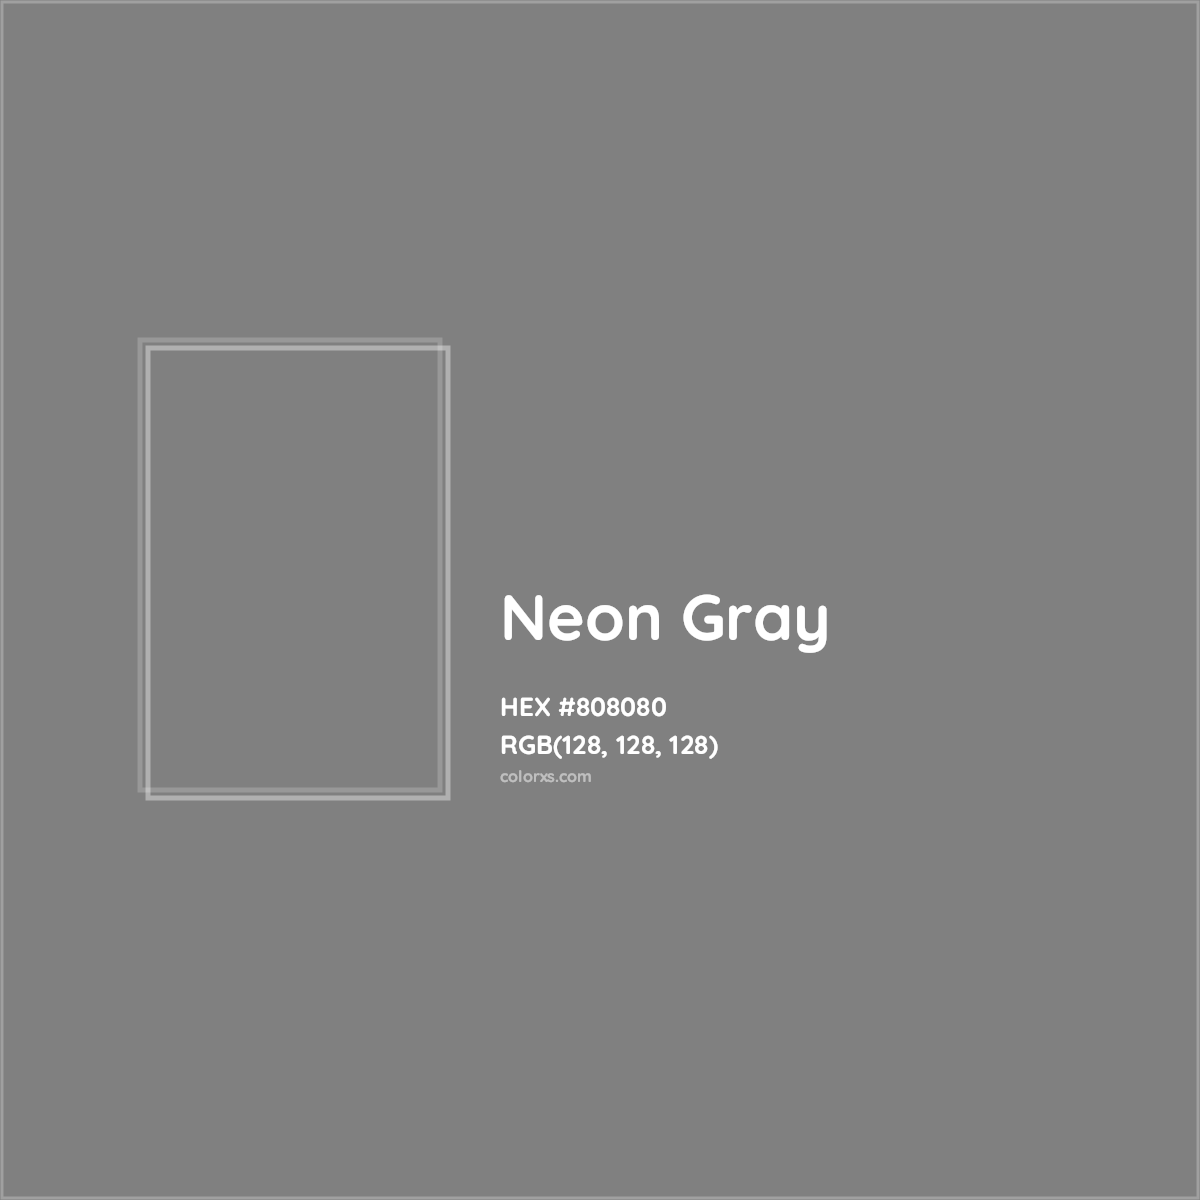 HEX #808080 Neon Gray Color - Color Code